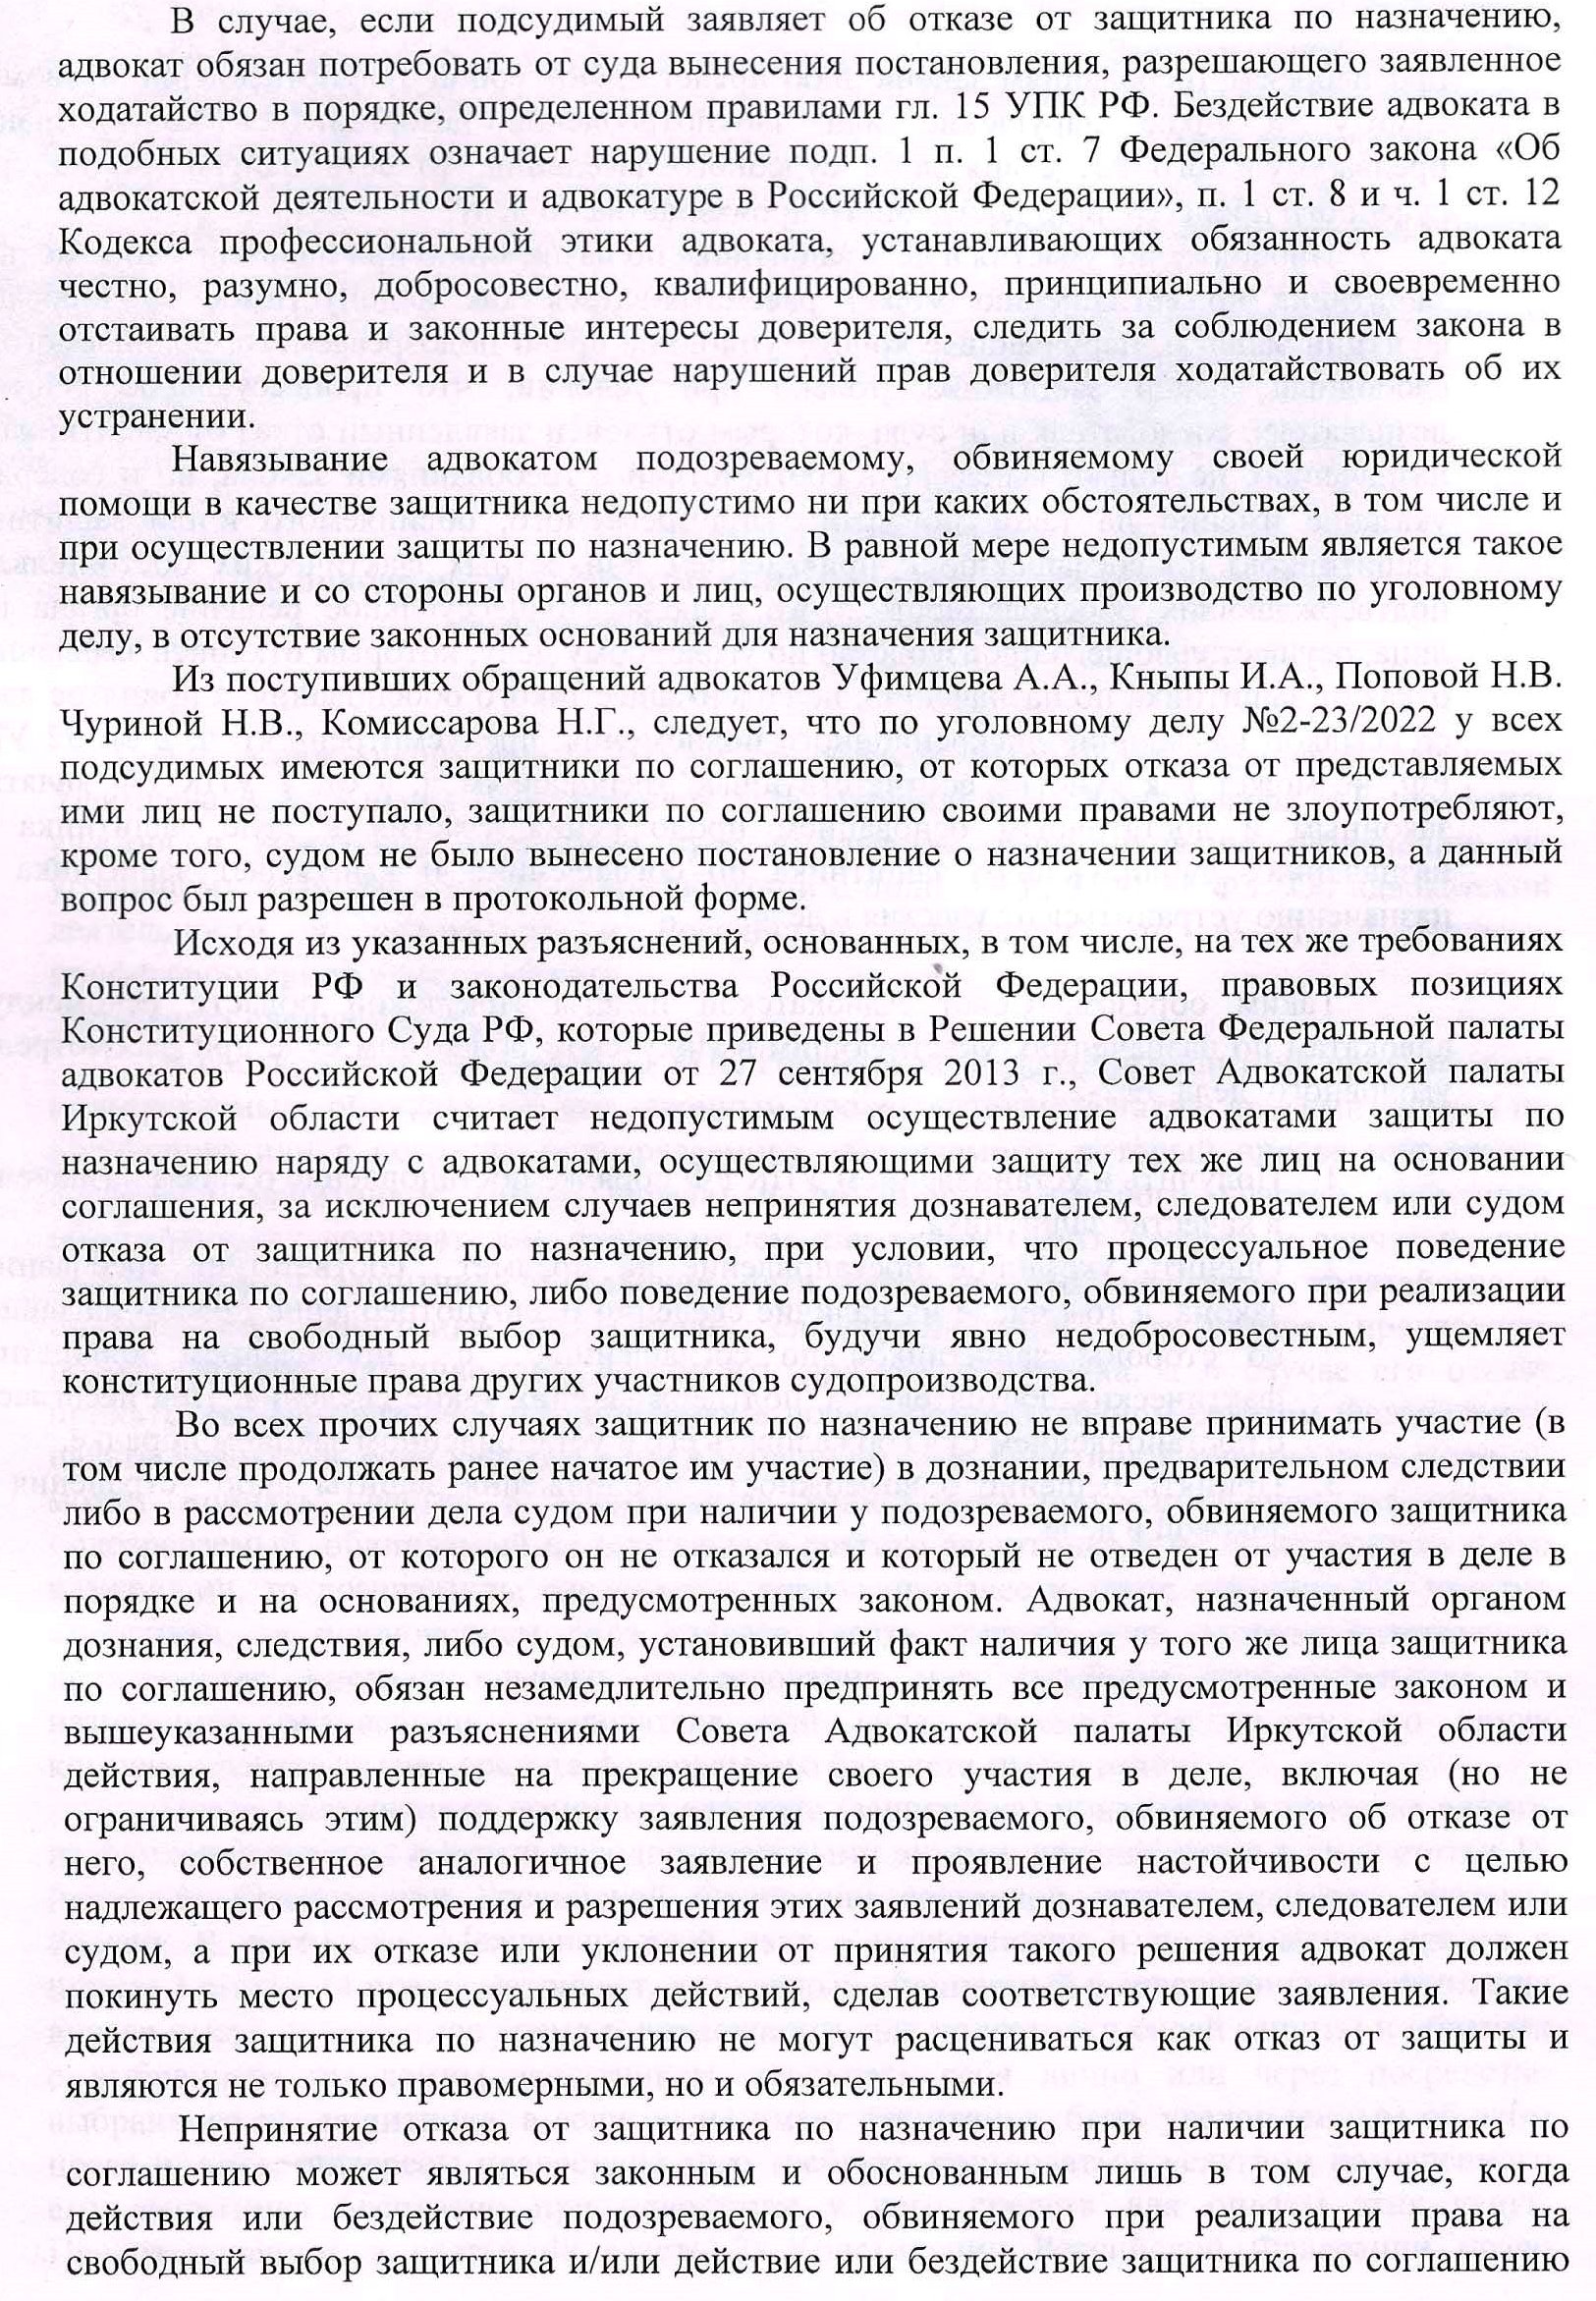 Razyasneniya po povodu vozmozhnyx dejstvij advokatov v slozhnoj eticheskoj situacii kasayushhejsya soblyudeniya eticheskix norm-3.jpg